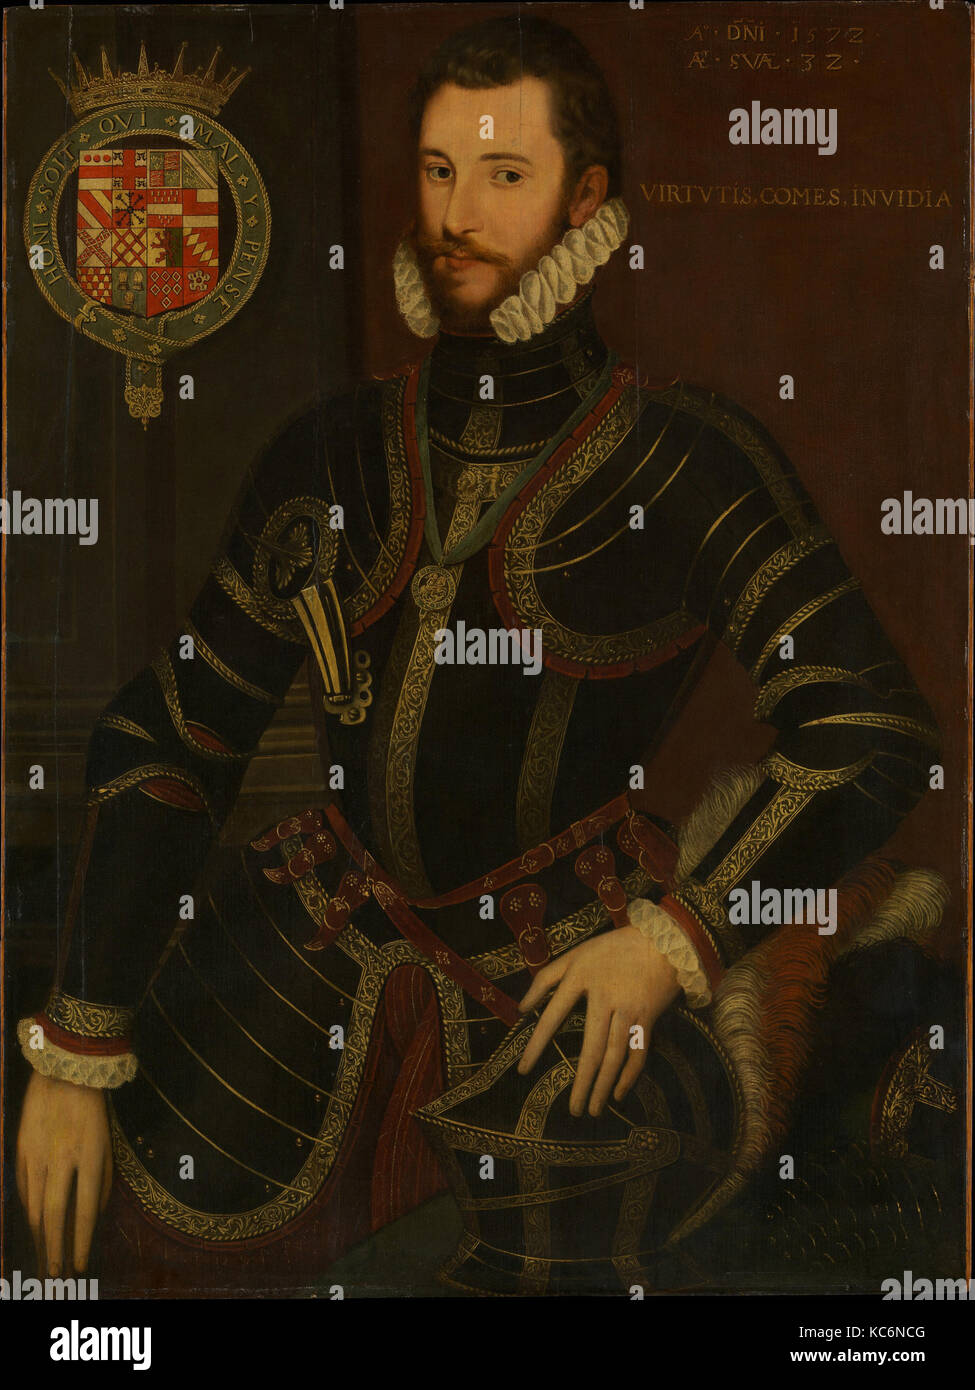 Retrato de Walter Devereux (1539-1576), primer conde de Essex, pintor británico, con fecha de 1572 Foto de stock